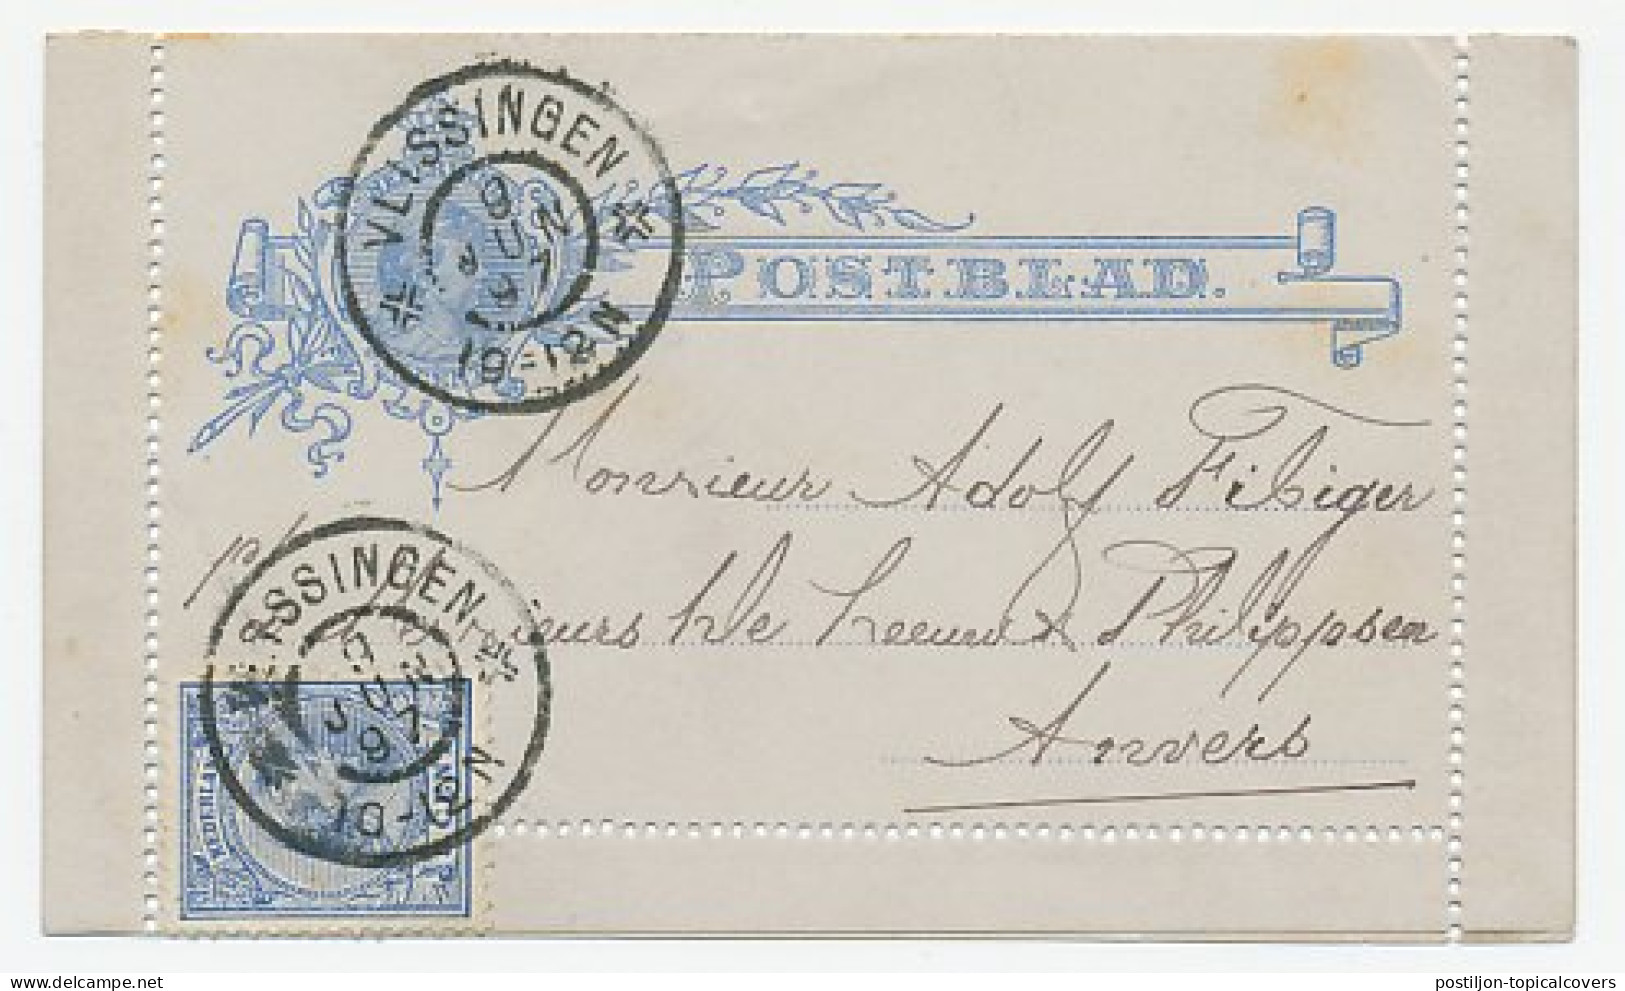 Postblad G. 6 / Bijfrankering Vlissingen - Belgie 1897 - Ganzsachen